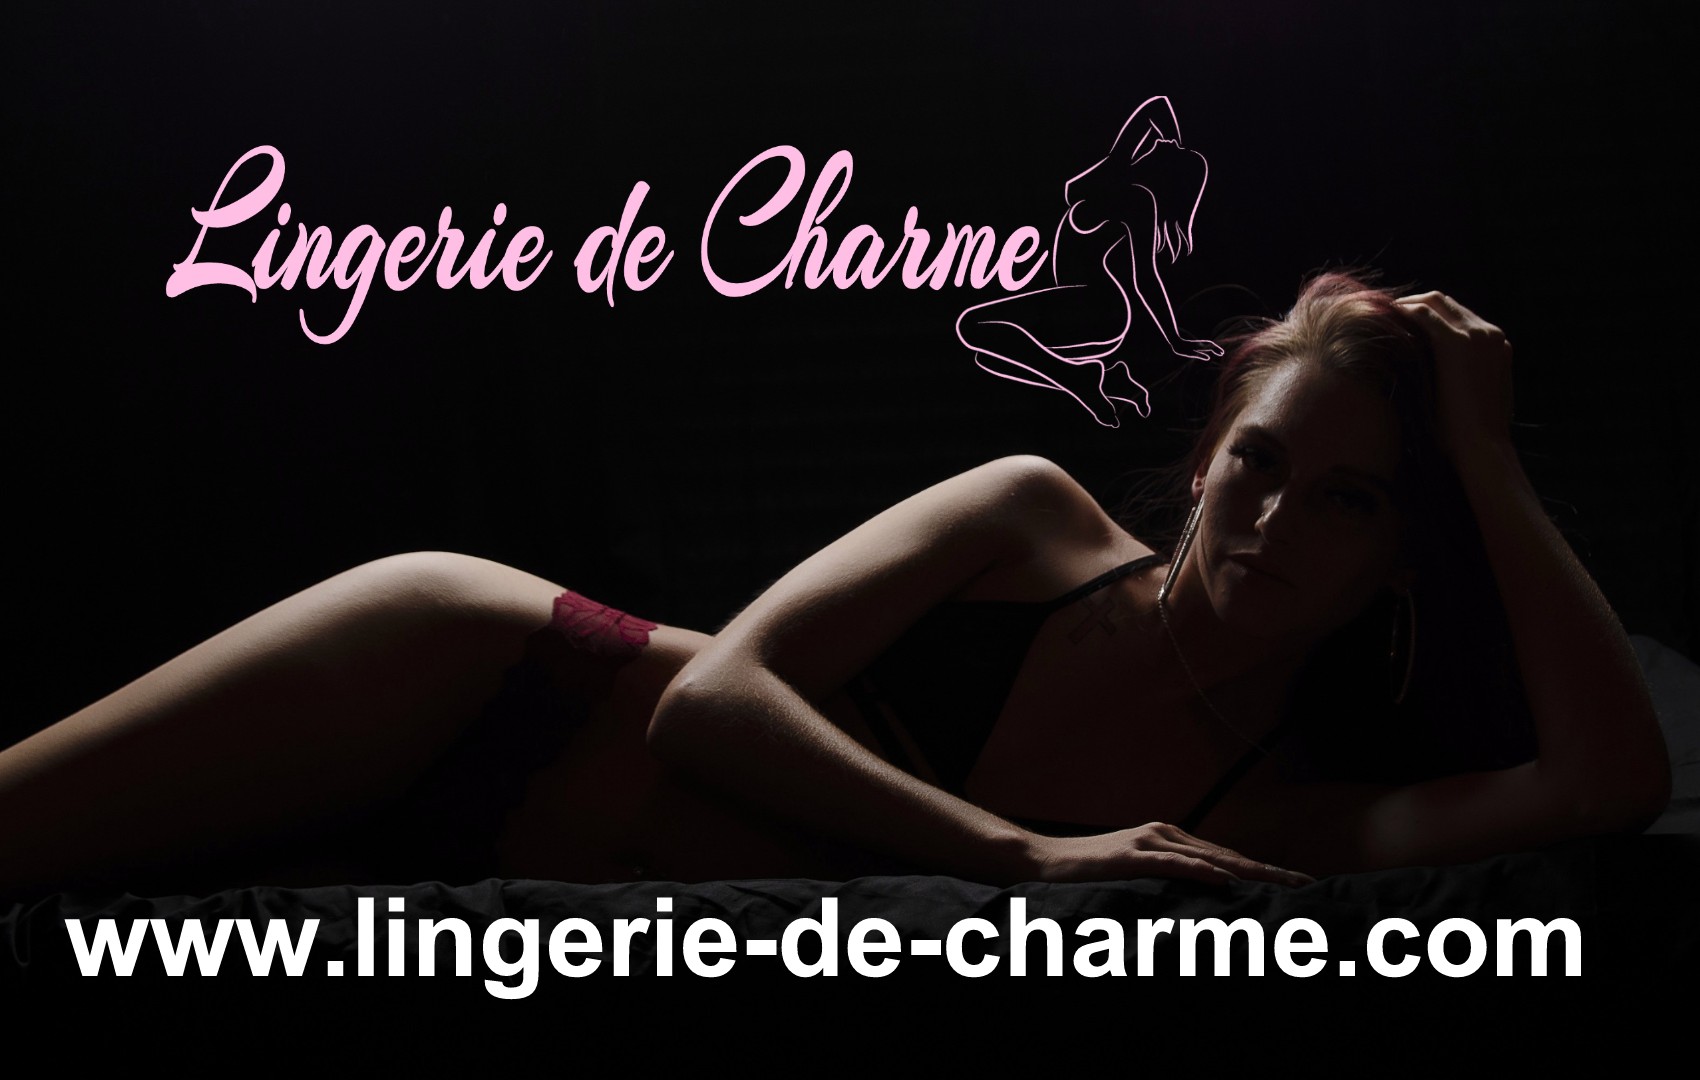 LINGERIE DE CHARME TOURRIERS 16 - LINGERIE SEXY TOURRIERS 16